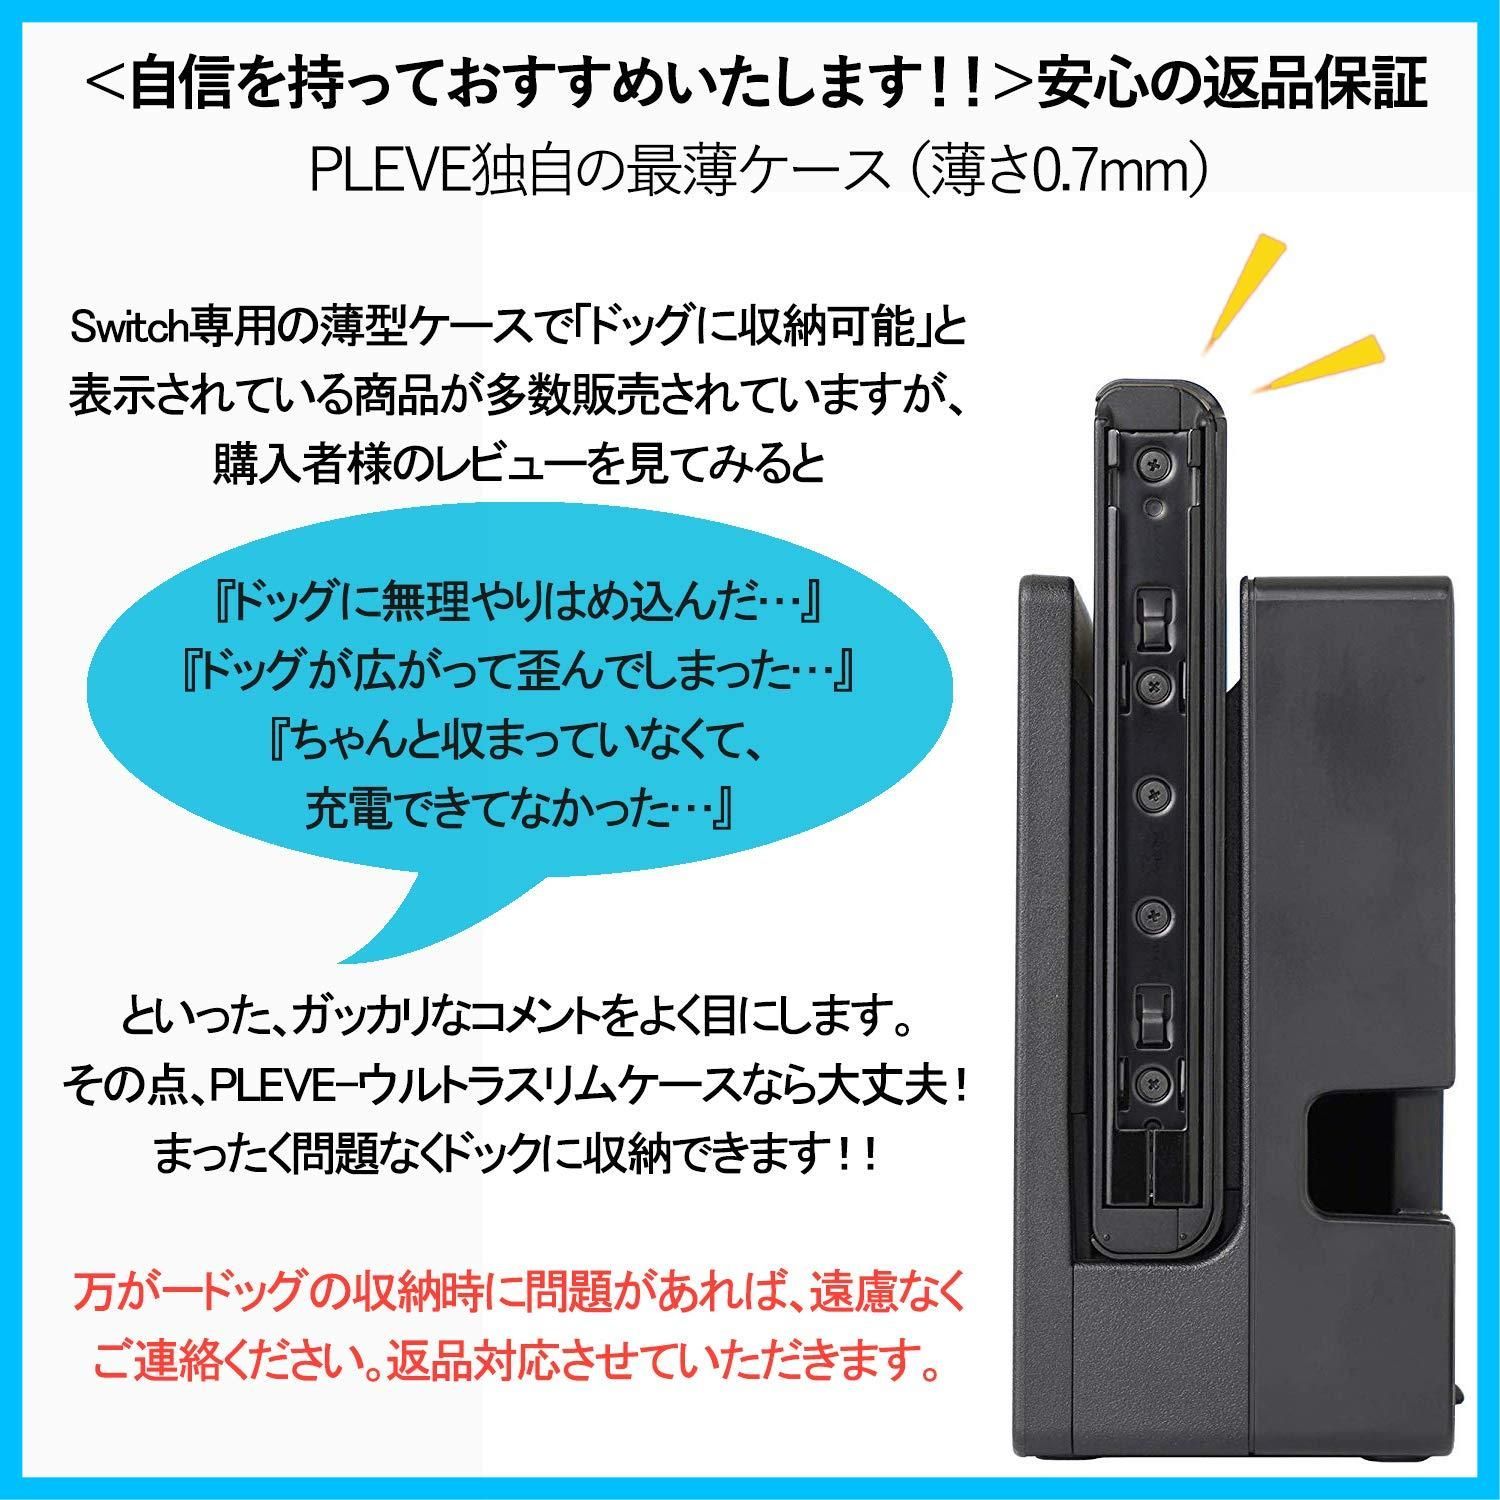 世界最薄】 装着したままドッグに収容可能 『Nintendo Switch専用 透明保護カバーケース』【超軽量 傷・汚れ・指紋防止  ゲームプレイに支障なし】「ウルトラスリムケース(スモークブラック)」任天堂スイッチ専用 カバーケース - メルカリ